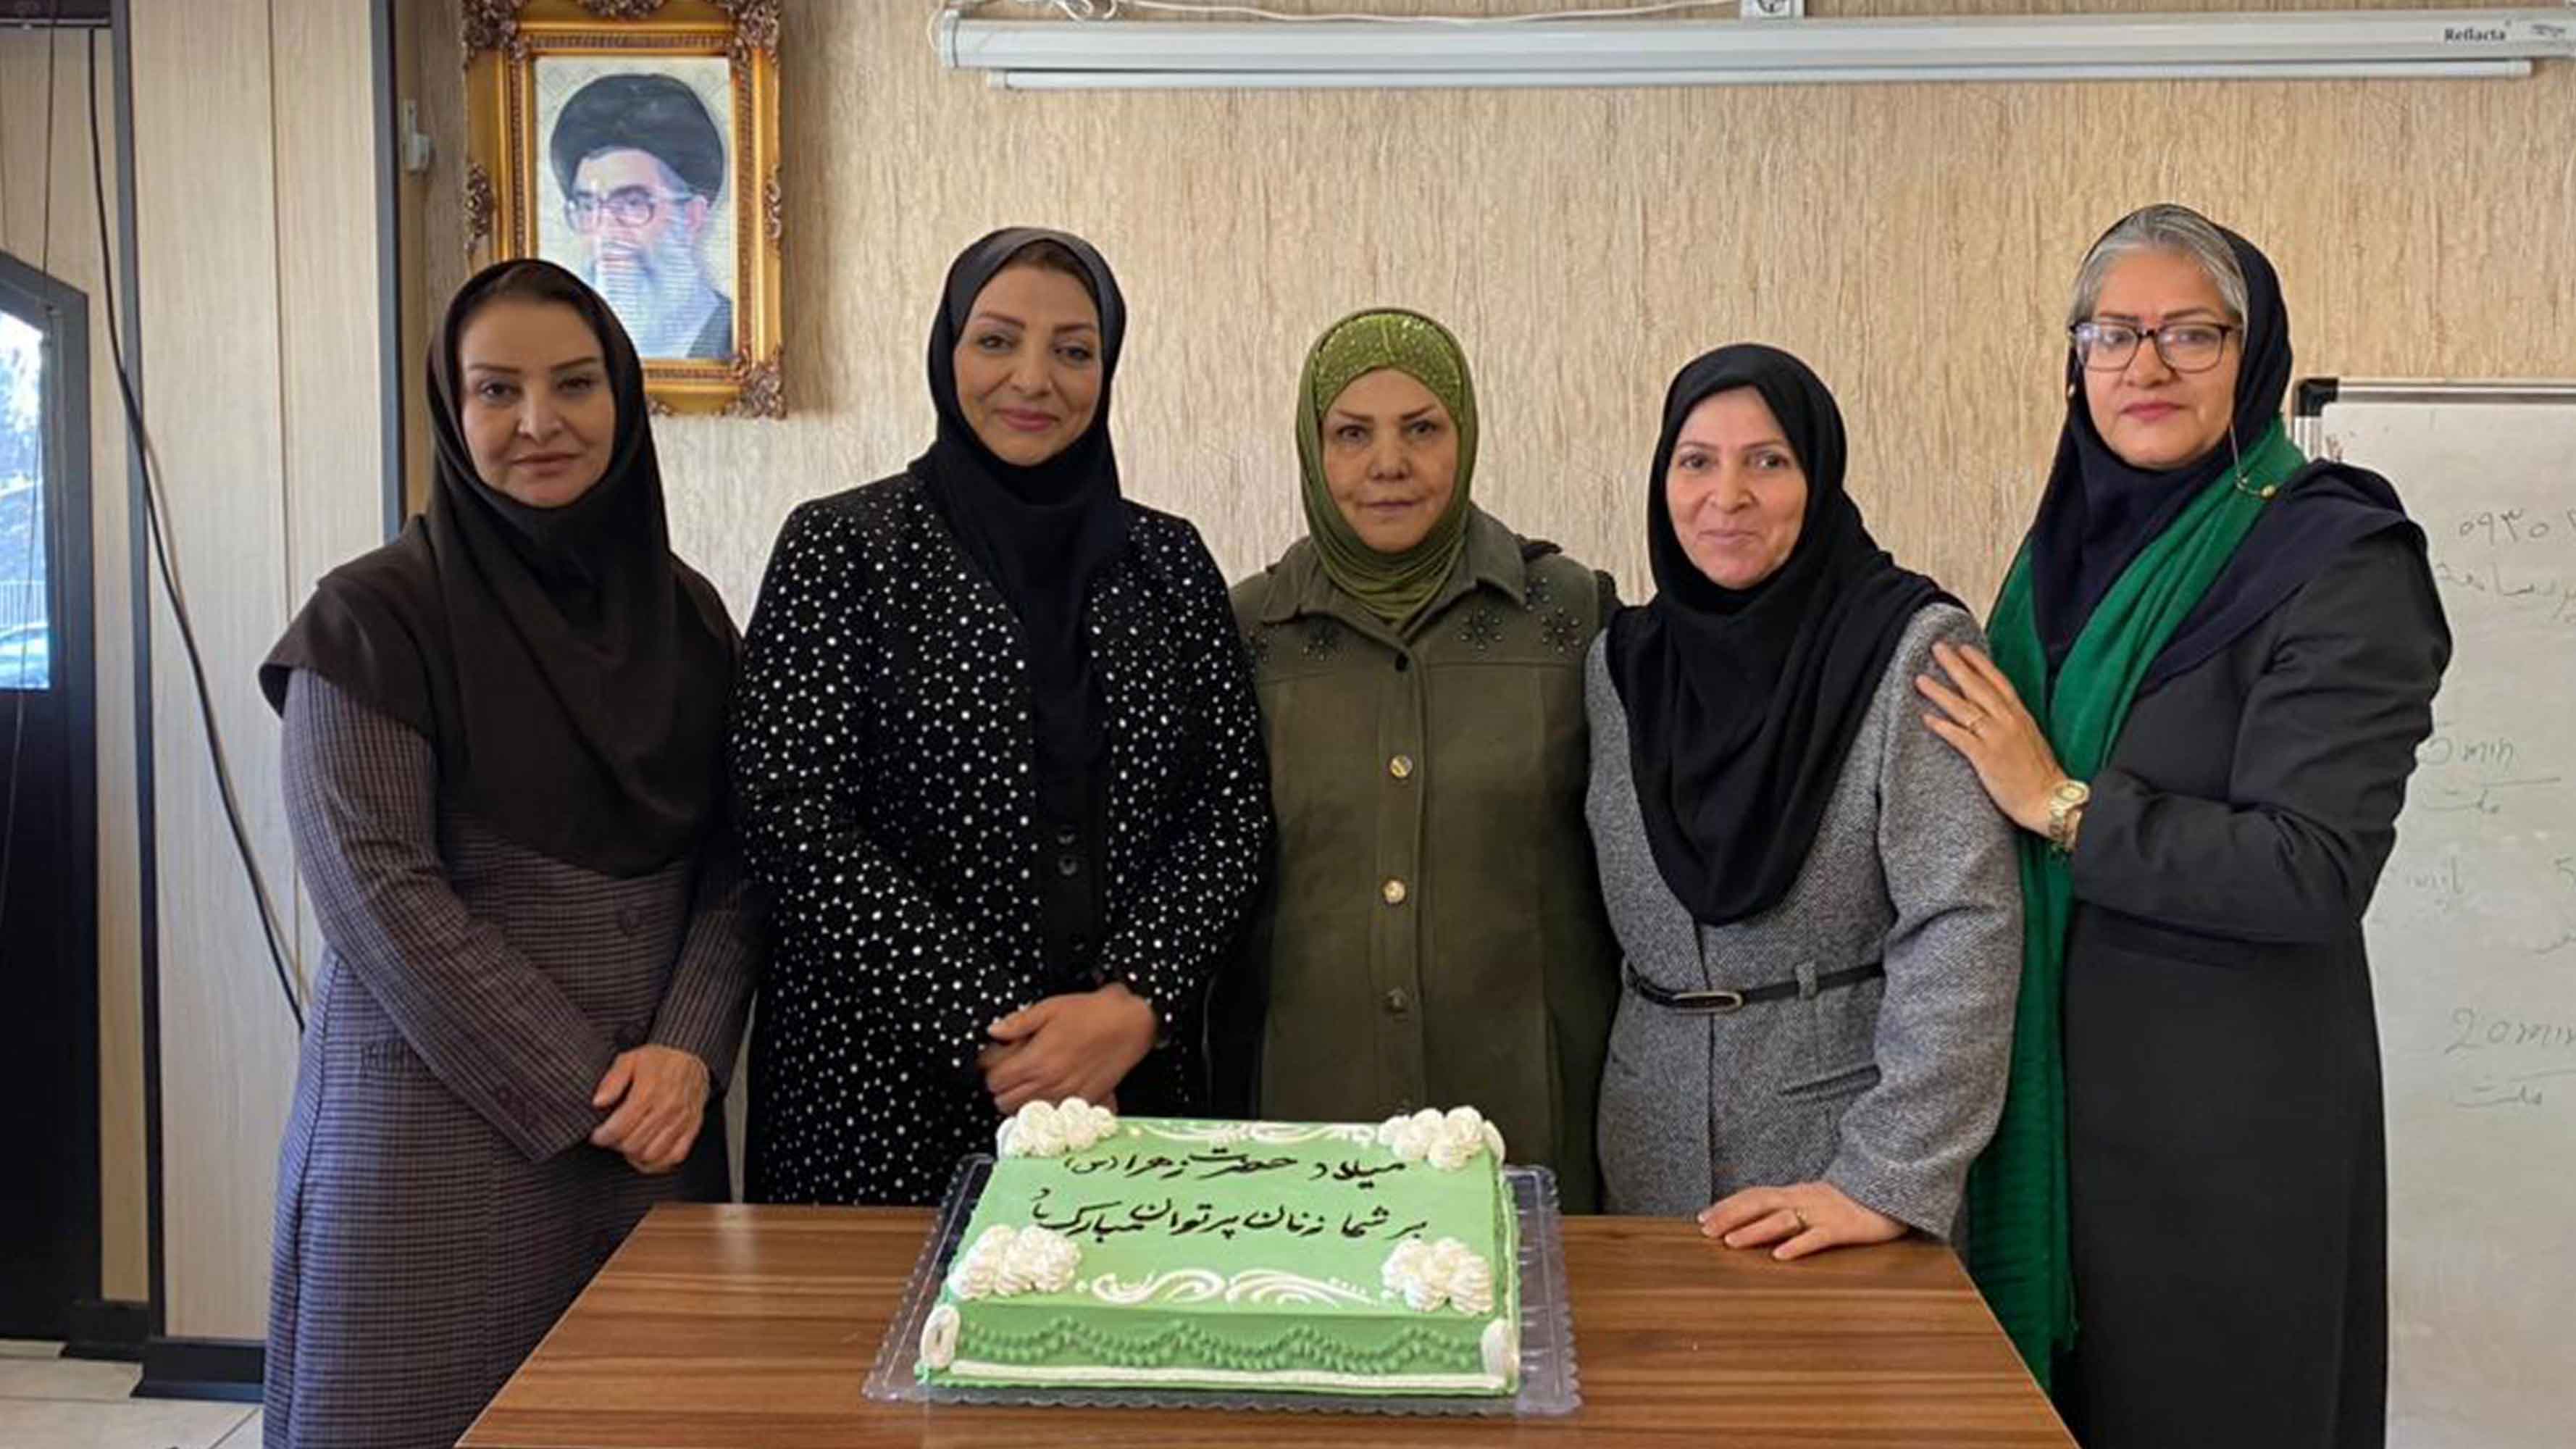 میلاد با سعادت حضرت زهرا و روز زن بر تمام بانوان گرامی باد - کمیسون شکایت اتحادیه آرایشگران زنانه شیراز